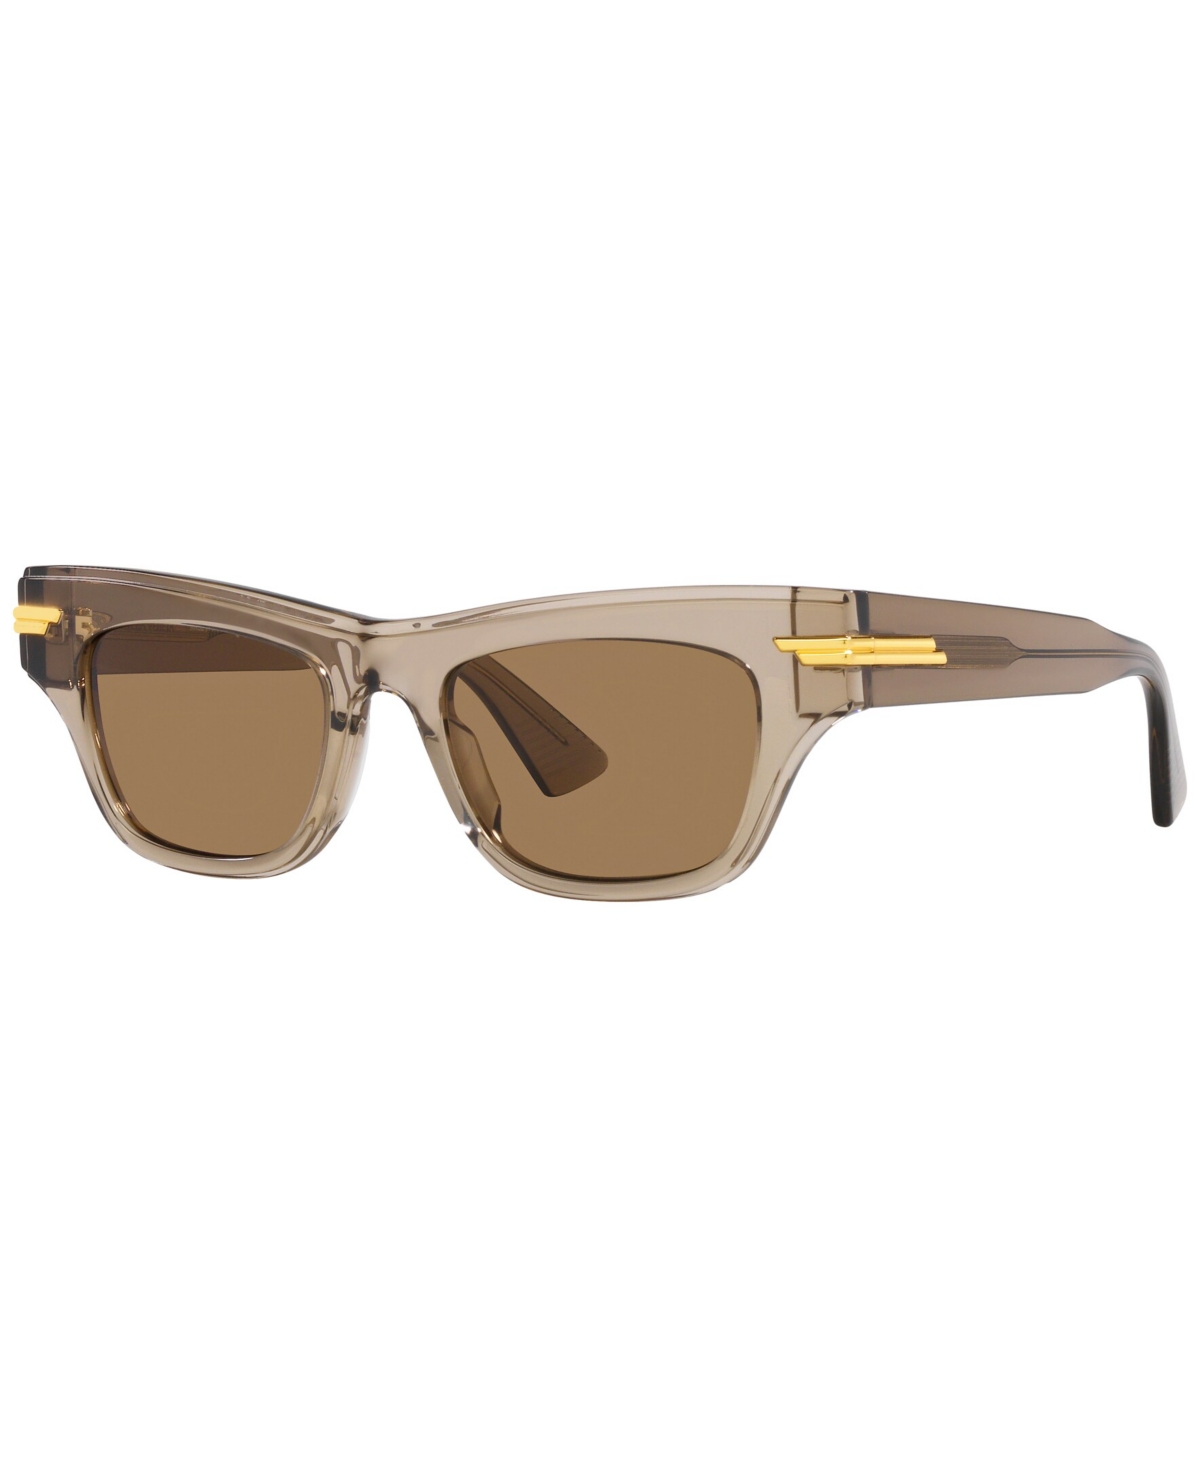 Bottega Veneta Women's Sunglasses, Bv1122s In Brown